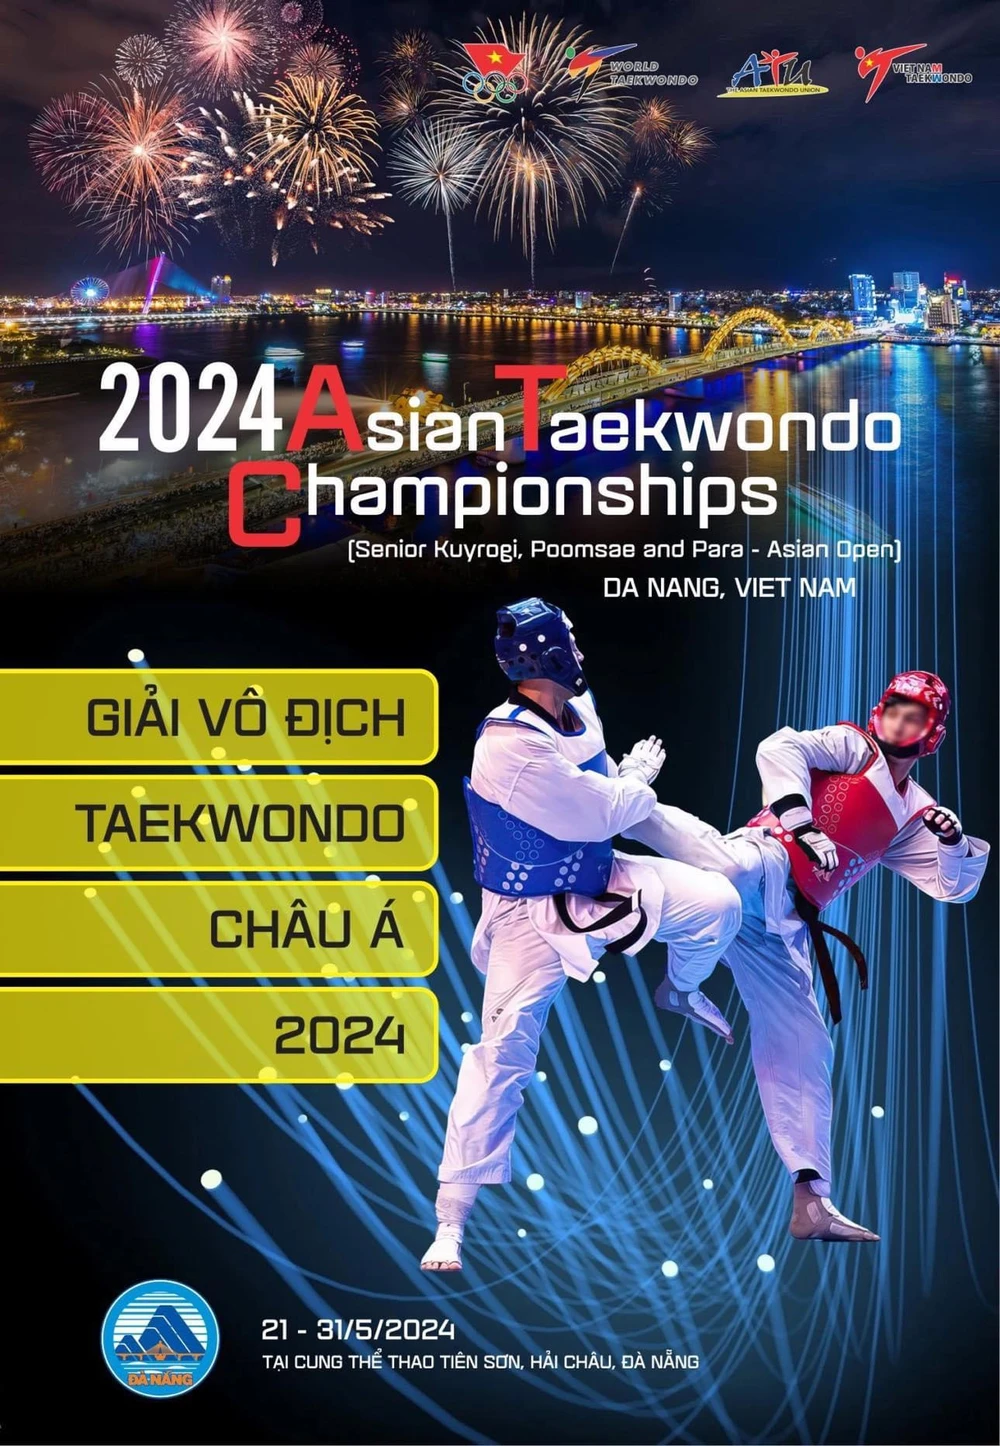 Việt Nam là chủ nhà của giải taekwondo vô địch châu Á 2024. Ảnh: TAEKWONDOVN